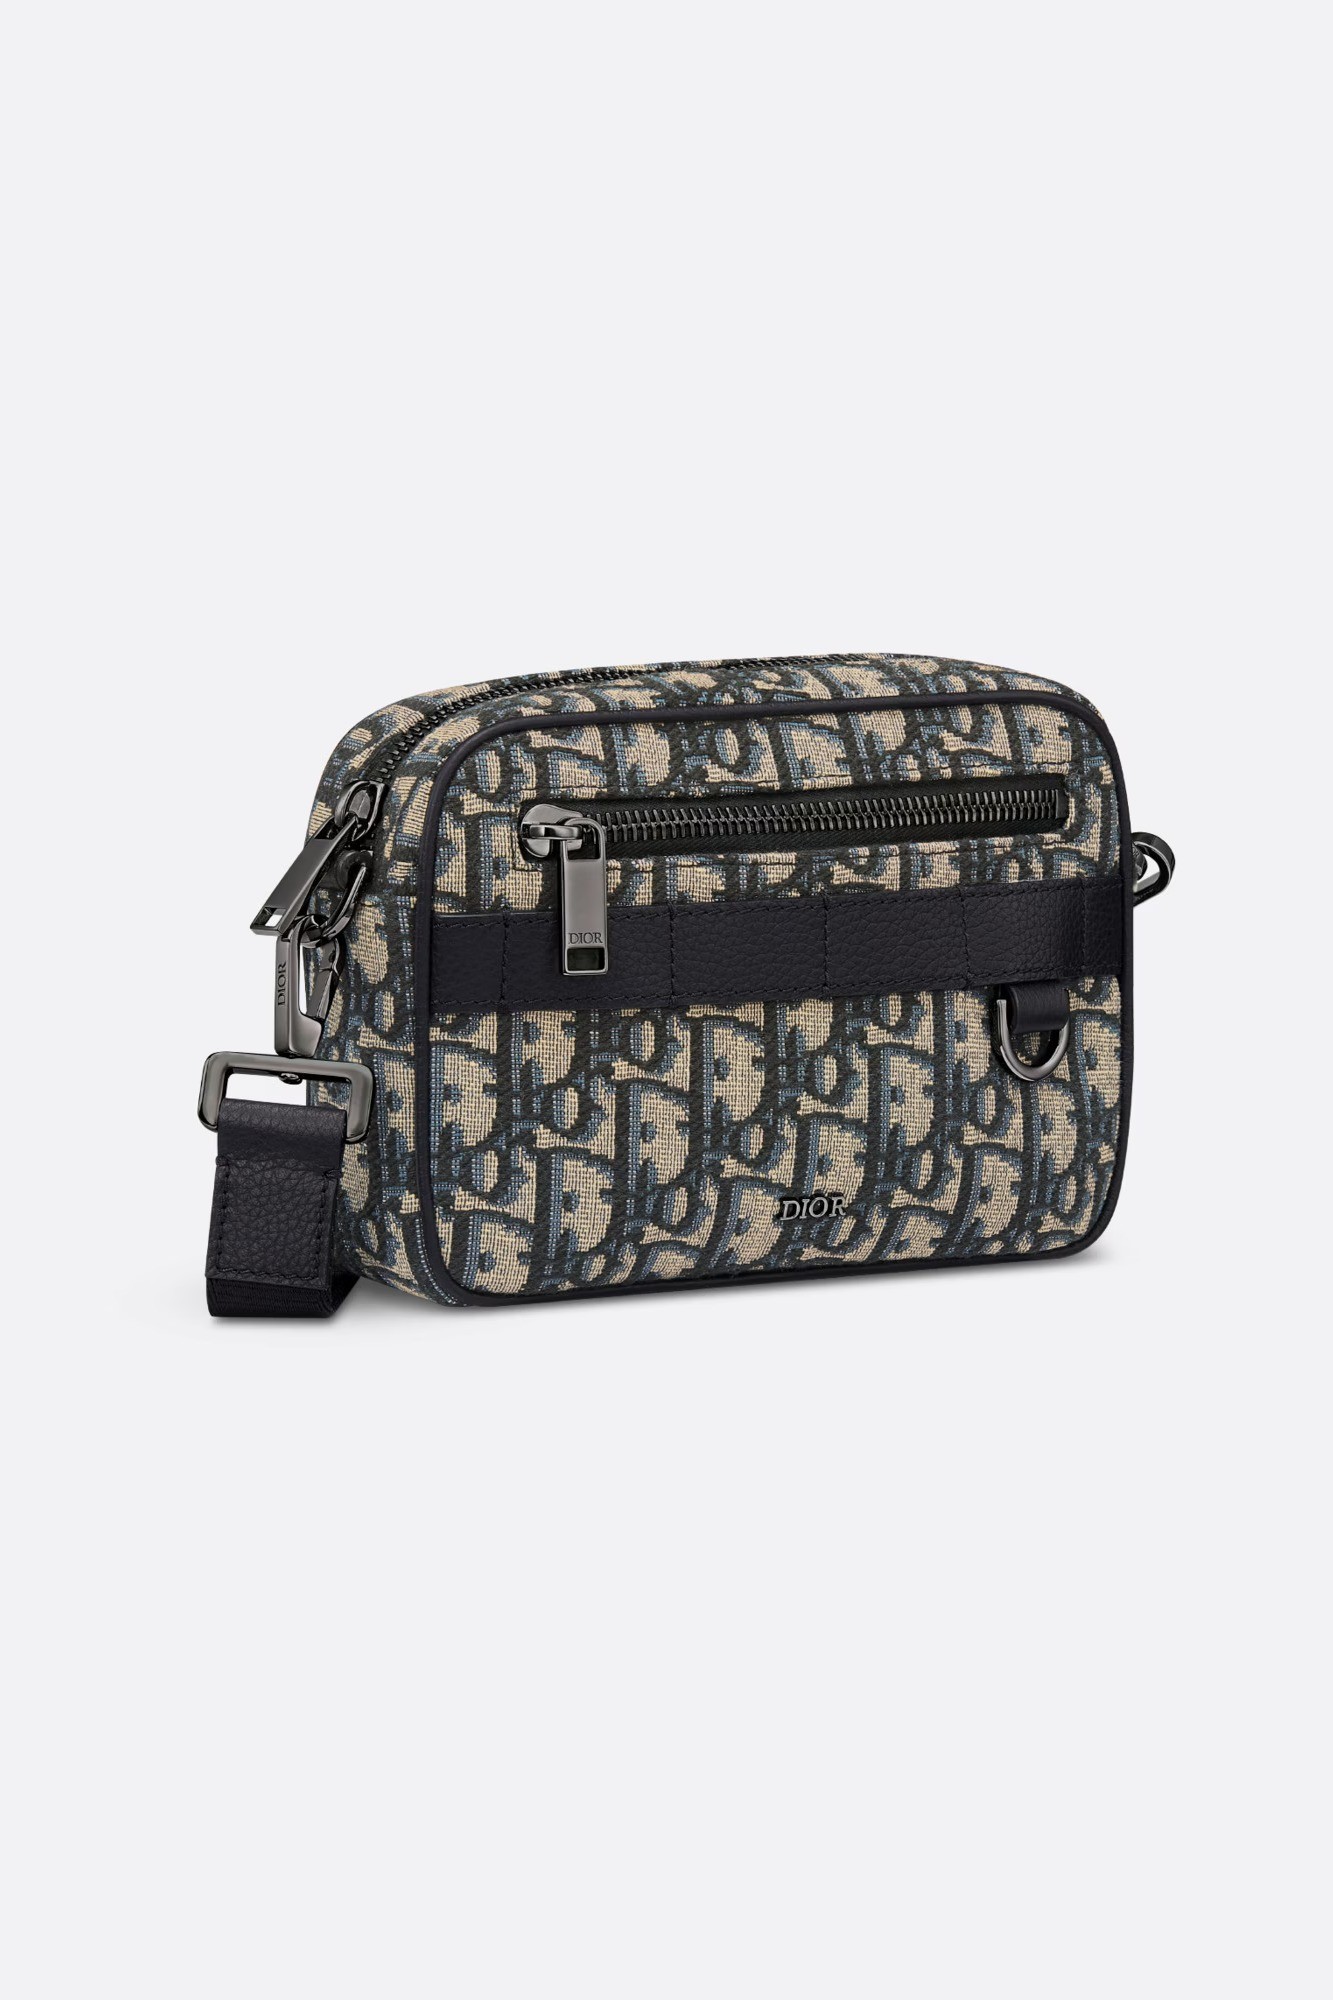 Mini Safari Bag with Strap - Beige and Black